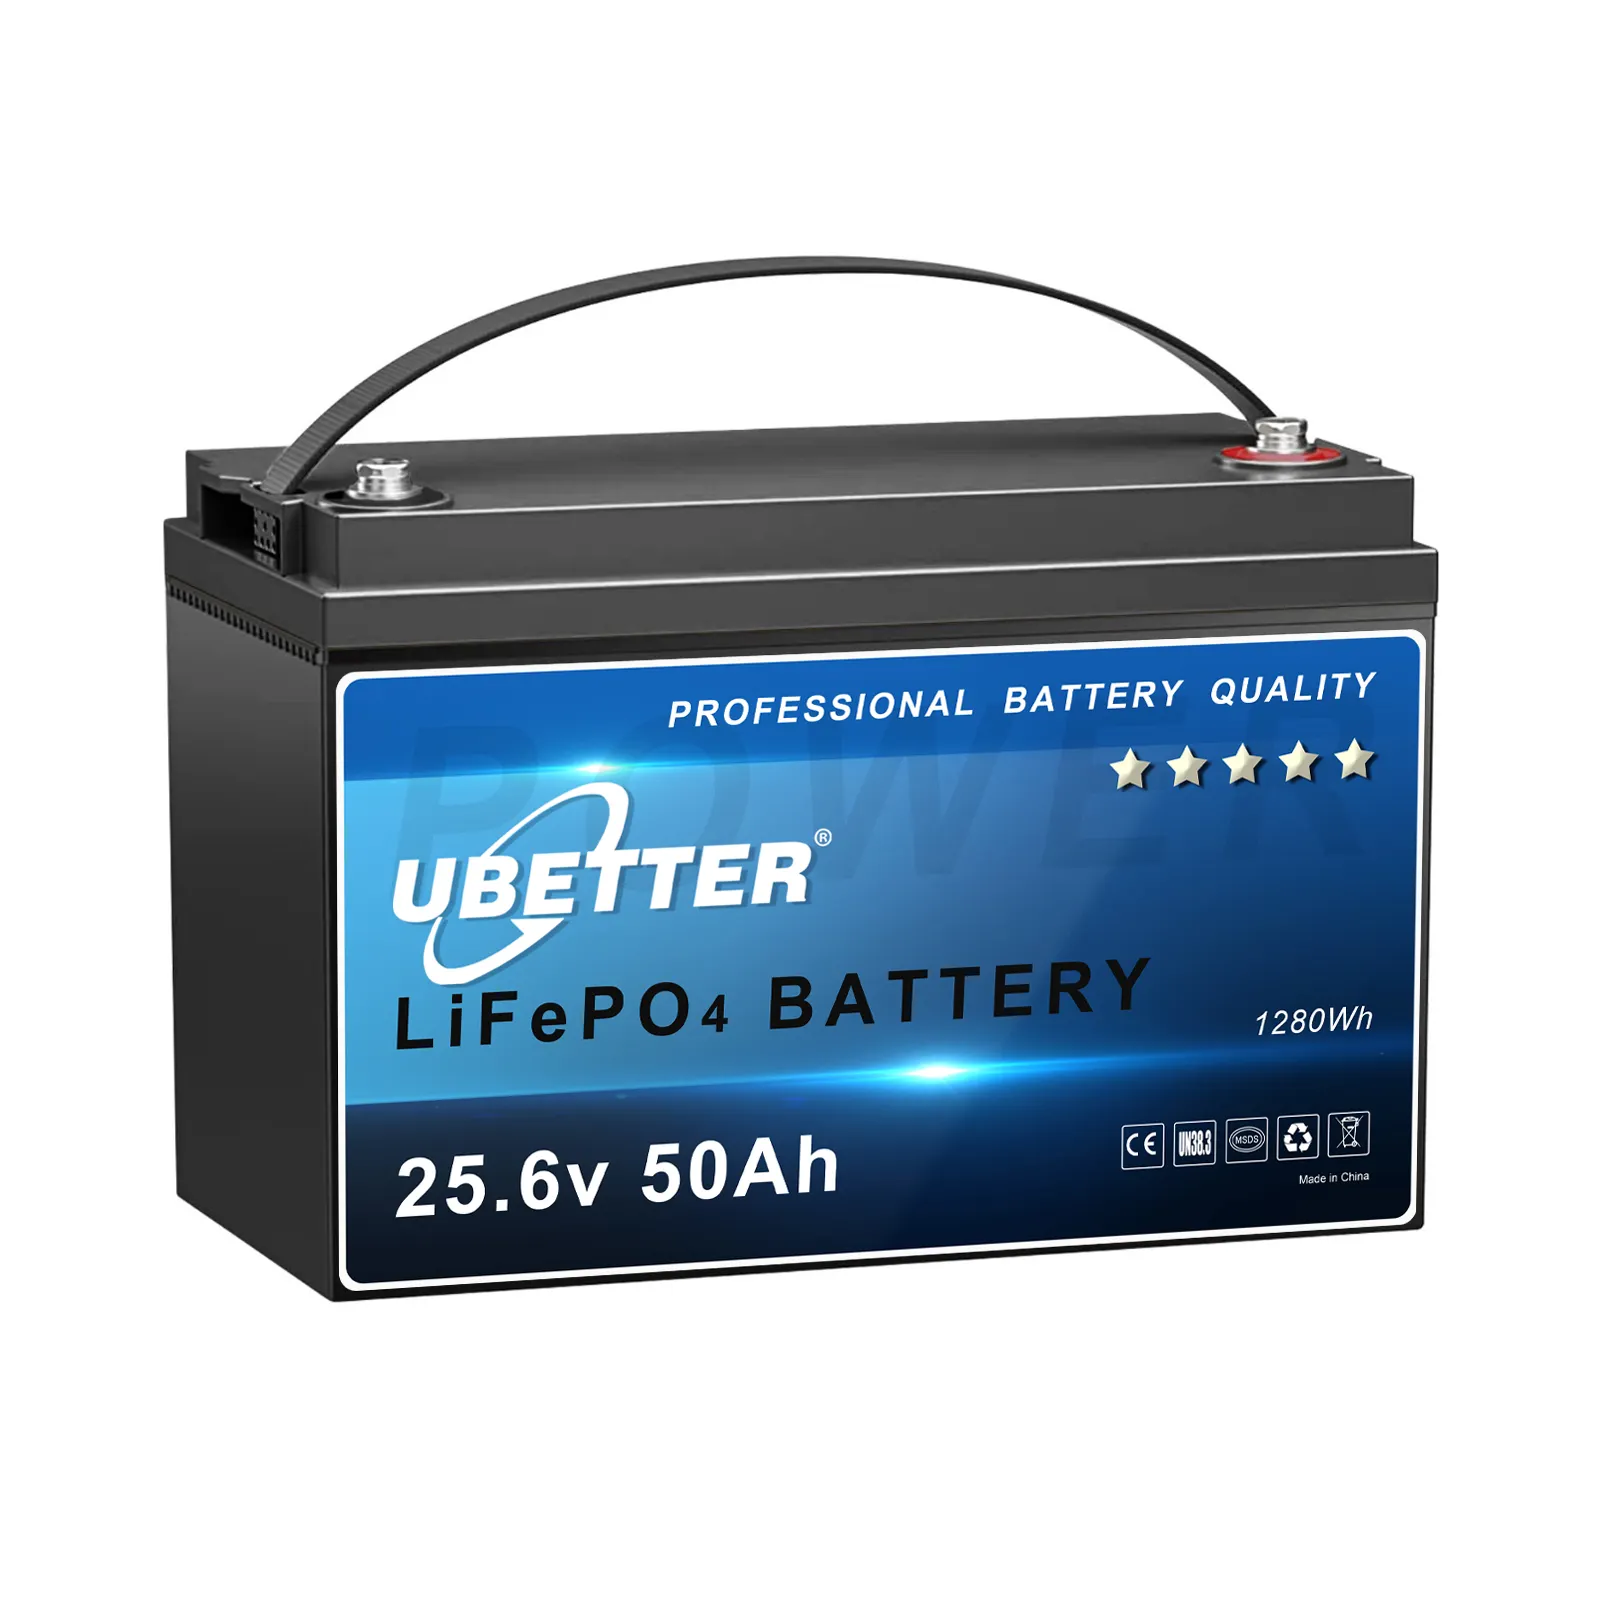 Lifepo4 배터리 12V 24V 48V 우리 재고 판매 전원 은행 등급 A 브랜드의 새로운 충전식 배터리 가정용 백업 전원